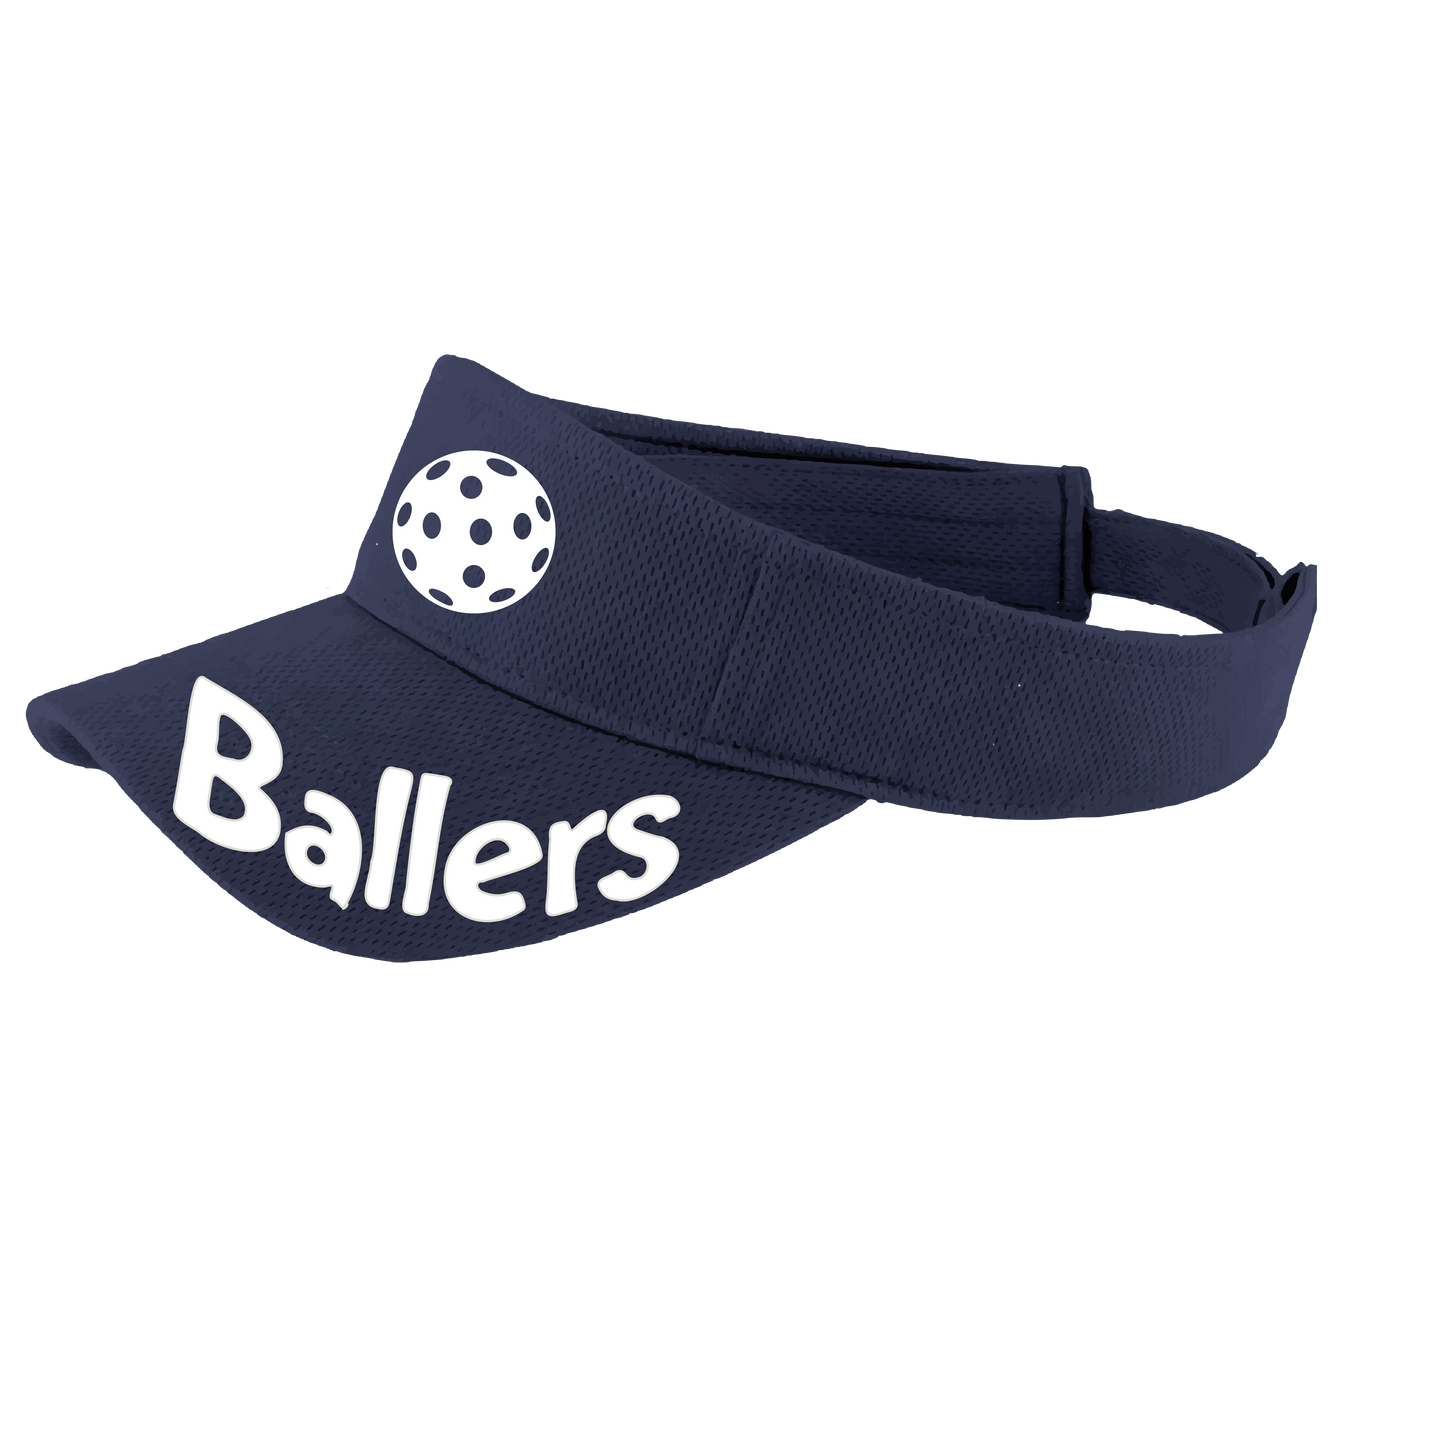 Ballers With Pickleballs (Customizable) | Pickleball Visors | Moisture Wicking 100% Polyester